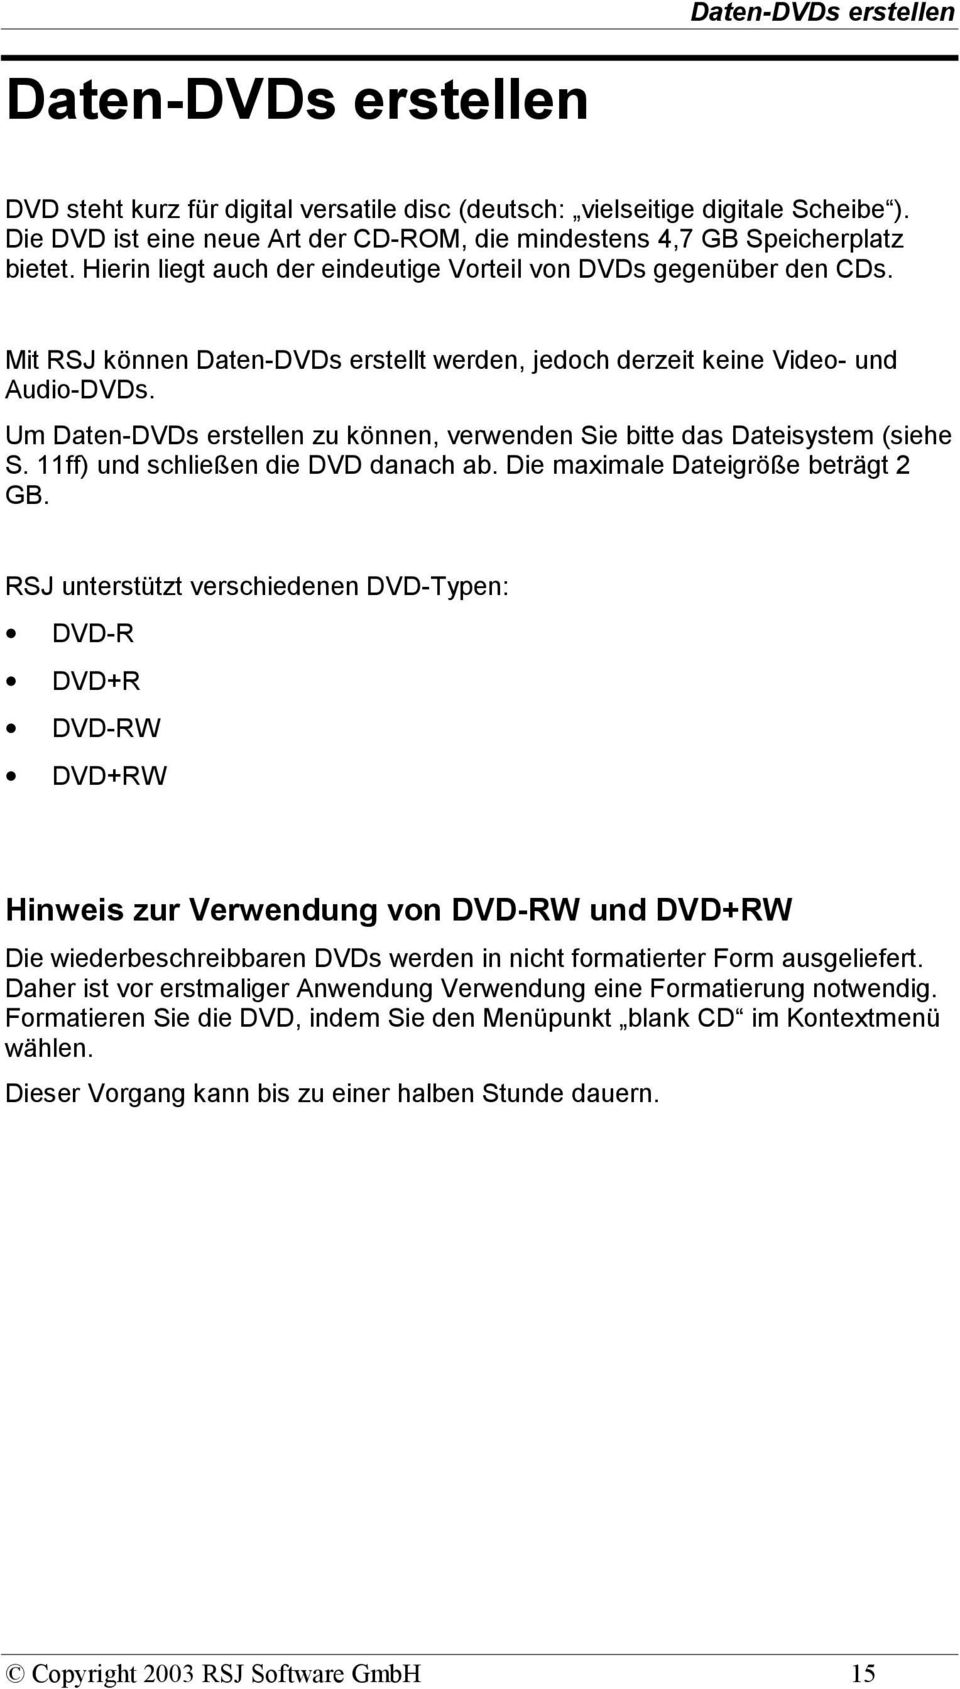 Mit RSJ können Daten-DVDs erstellt werden, jedoch derzeit keine Video- und Audio-DVDs. Um Daten-DVDs erstellen zu können, verwenden Sie bitte das Dateisystem (siehe S.